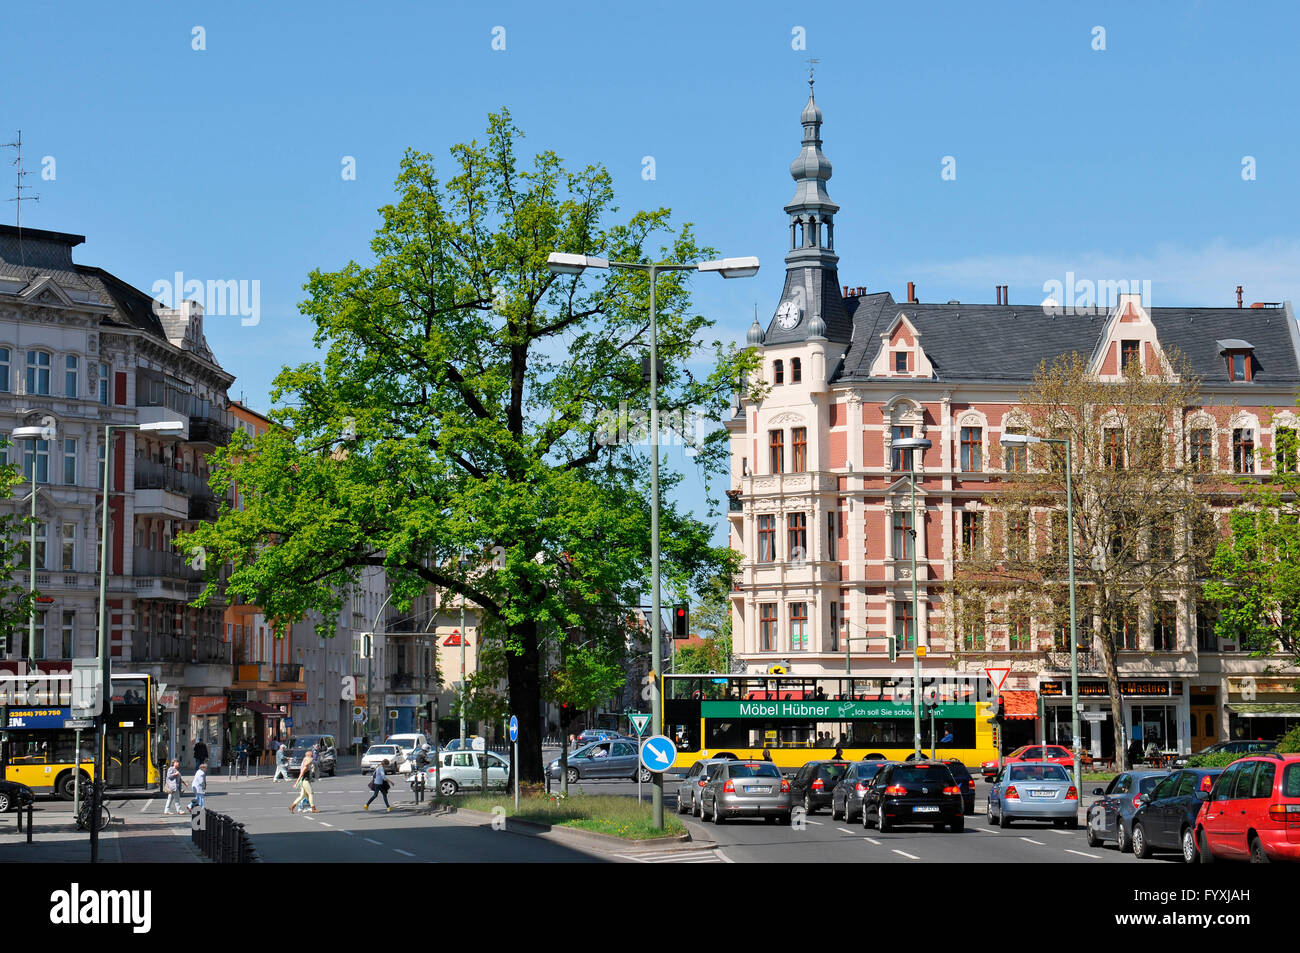 Kaisereiche, Rheinstrasse, Friedenau, Berlin, Germany / emperor's oak Stock Photo